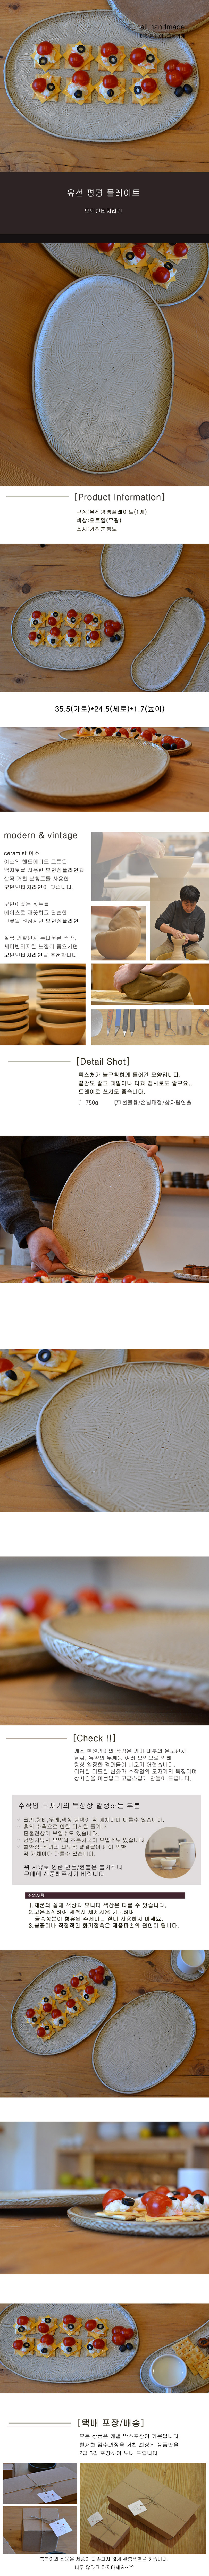 all handmade 테이블웨어 그릇가게 유선 평평 플레이트 모던빈티지라인 Product Information 구성 : 유선평평플레이트(1개) 색상 : 오트밀(무광) 소지 : 거친분청토 35.5(가로)*24.5(세로)*1.7(높이) modern & vintage, ceramist 이소 이소의.. all handmade 그릇은 백자토를 사용한 모던심플라인과 사질 분청토를 사용한 모던빈티지라인이 있습니다. 모던이라는 화두를 베이스로 깨끗하고 단순한 그릇을 원하시면 모던심플라인, 내추럴한 질감에 톤다운된 색감, 세미빈티지한 느낌이 좋으시면 모던빈티지라인을 추천합니다. Detail Shot, 텍스처가 불규칙하게 들어간 모양입니다. 질감도 좋고 과일이나 다과 접시로도 좋구요.. 트레이로 쓰셔도 좋습니다. 750g 선물용/손님대접/상차림연출, Check!!, 개스 환원가마의 작업은 가마 내부의 온도편차, 날씨, 유약의 두께등 여러 요인으로 인해 항상 일정한 결결과물이 나오기 어렵습니다. 이러한 미묘한 변화가 핸드메이드 그릇의 특징이며 상차림을 아름답고 고급스롭게 만들어 드립니다. 수작업 도자기의 특성상 발생하는 부분, 크기, 형태, 무게, 색상, 광택이 각 개체마다 조금씩 다를 수 있습니다. 번조시(불때기) 수축으로 인해 미세한 돌기나 핀홀현상이 간혼 있을수도 있습니다. 덤빙시유하여 유약의 흐름자국이 보일수도 있습니다. 철반점은 작가의 의도적 결과물이며 이 또한 각 개체마다 다를 수 있습니다. 위 사유로 인한 교환/반품의 경우 왕복택배비는 고객님의 부담입니다. 주의사항 1. 제품의 실제색상과 모니터 색상상은 다를 수 있습습니다. 2. 고온소성하여 세척시 세제사용 가능하며 금속성분이 함유된 수세미는 절대 사용하지 마세요. 3. 불꽃이나 직접적인 화기접촉은 제품파손의 원인이 됩니다. 택배 포장/배송 모든 상품은 개별 박스포장이 기본입니다. 철저한 검수과정을 거친 최상의 상품만을 2겹 3겹 포장하여 안전하게 보내 드립니다. 교환/반품이 가능한 경우 *상품을 받으신 날로붙부터 5영업일(7일)이내 Q&A게시판에 상품사진과 요청글을을 올려주세요. *교환/반품은 전화상담이나 Q&A게시판 고객상담후 진행됩니다. *상품의 재포장은 최초 포장상태와 같아야 합니다.(파손방지) *신청없이 상품을 보내어 분실 되는경우 변상되지 않으며 청약철회가 진행되지 않습니다. 교환/반품이 불가능한 경우 *고객님의 책임있는 사유로 상품등이 멸실 또는 훼손된 경우 *케이스 및 전용포장이 있는 경우 (포장이 개방/훼손되어 상품가치가 상실된 경우) *고객님의 사용/소비로 인한 상품가치가 상실된 경우 *시간의 경과등에 의해 재판매가 곤란할 정도의 상품등의 가치가 하락한 경우 *주문제작 상품 및 작품의 경우 단순변심에 의한 교환/반품의 경우 구매금액에 상관없이 왕복 배송비는 고객님이 부담핫하셔야합니다. (색상교환,사이즈교환)